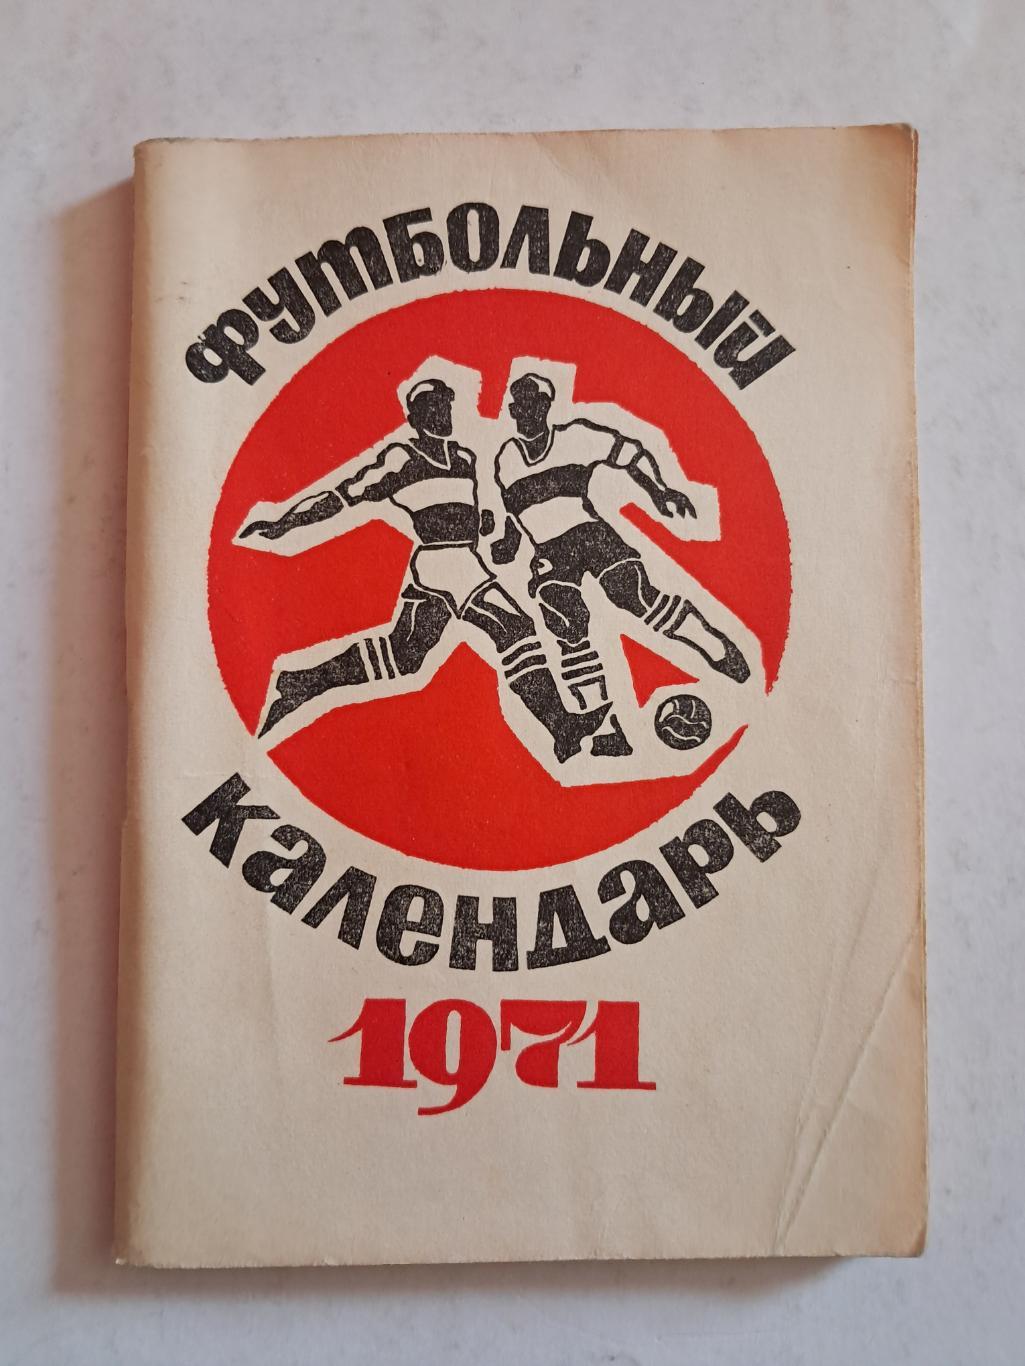 Календарь-справочник по футболу 1971 Москва